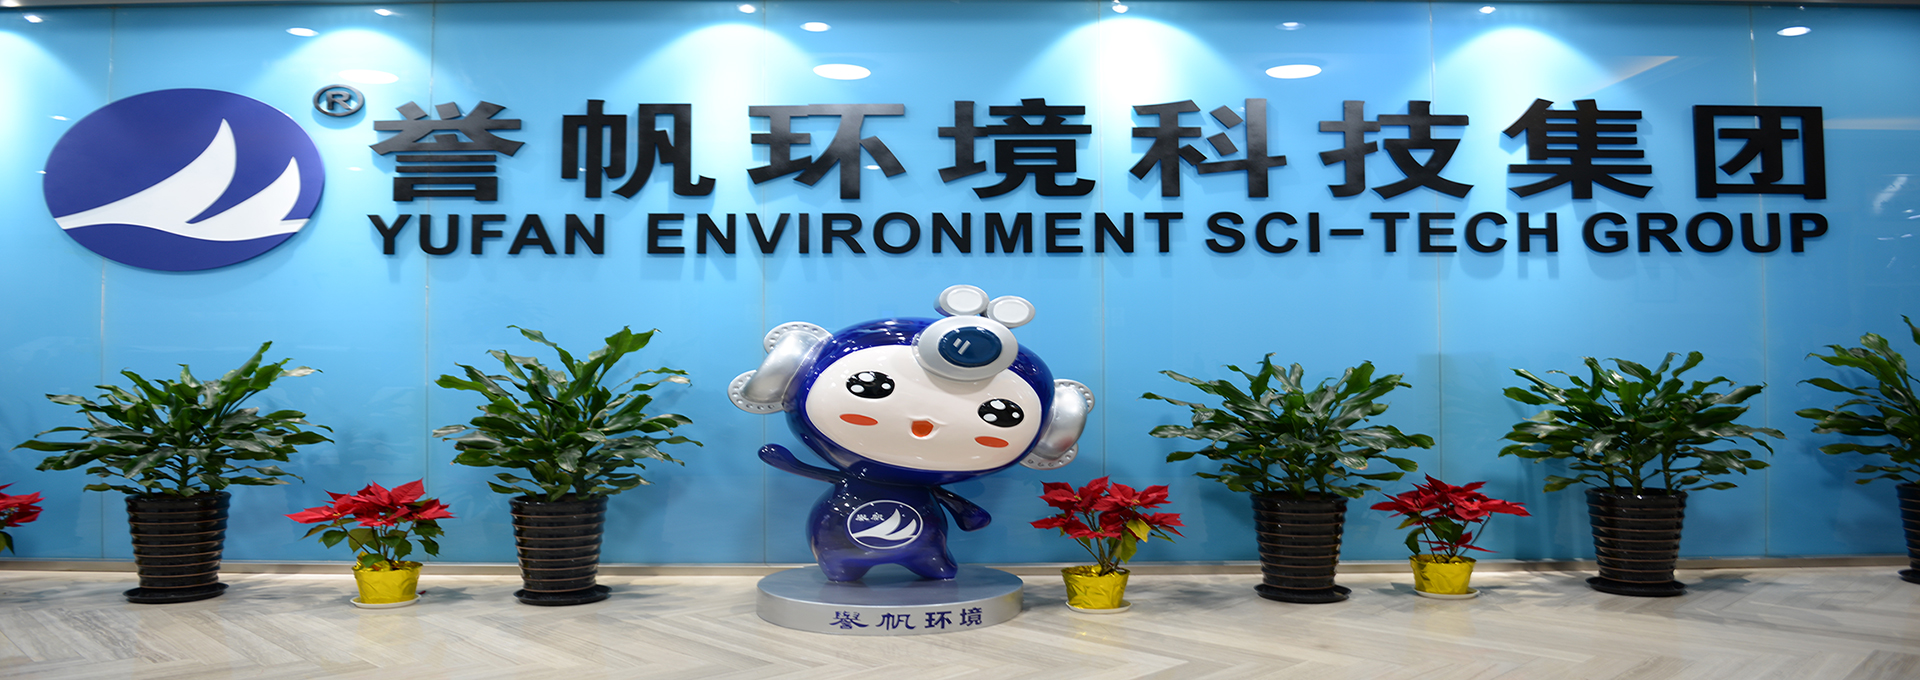 上海誉帆环境科技股份有限公司广州分公司